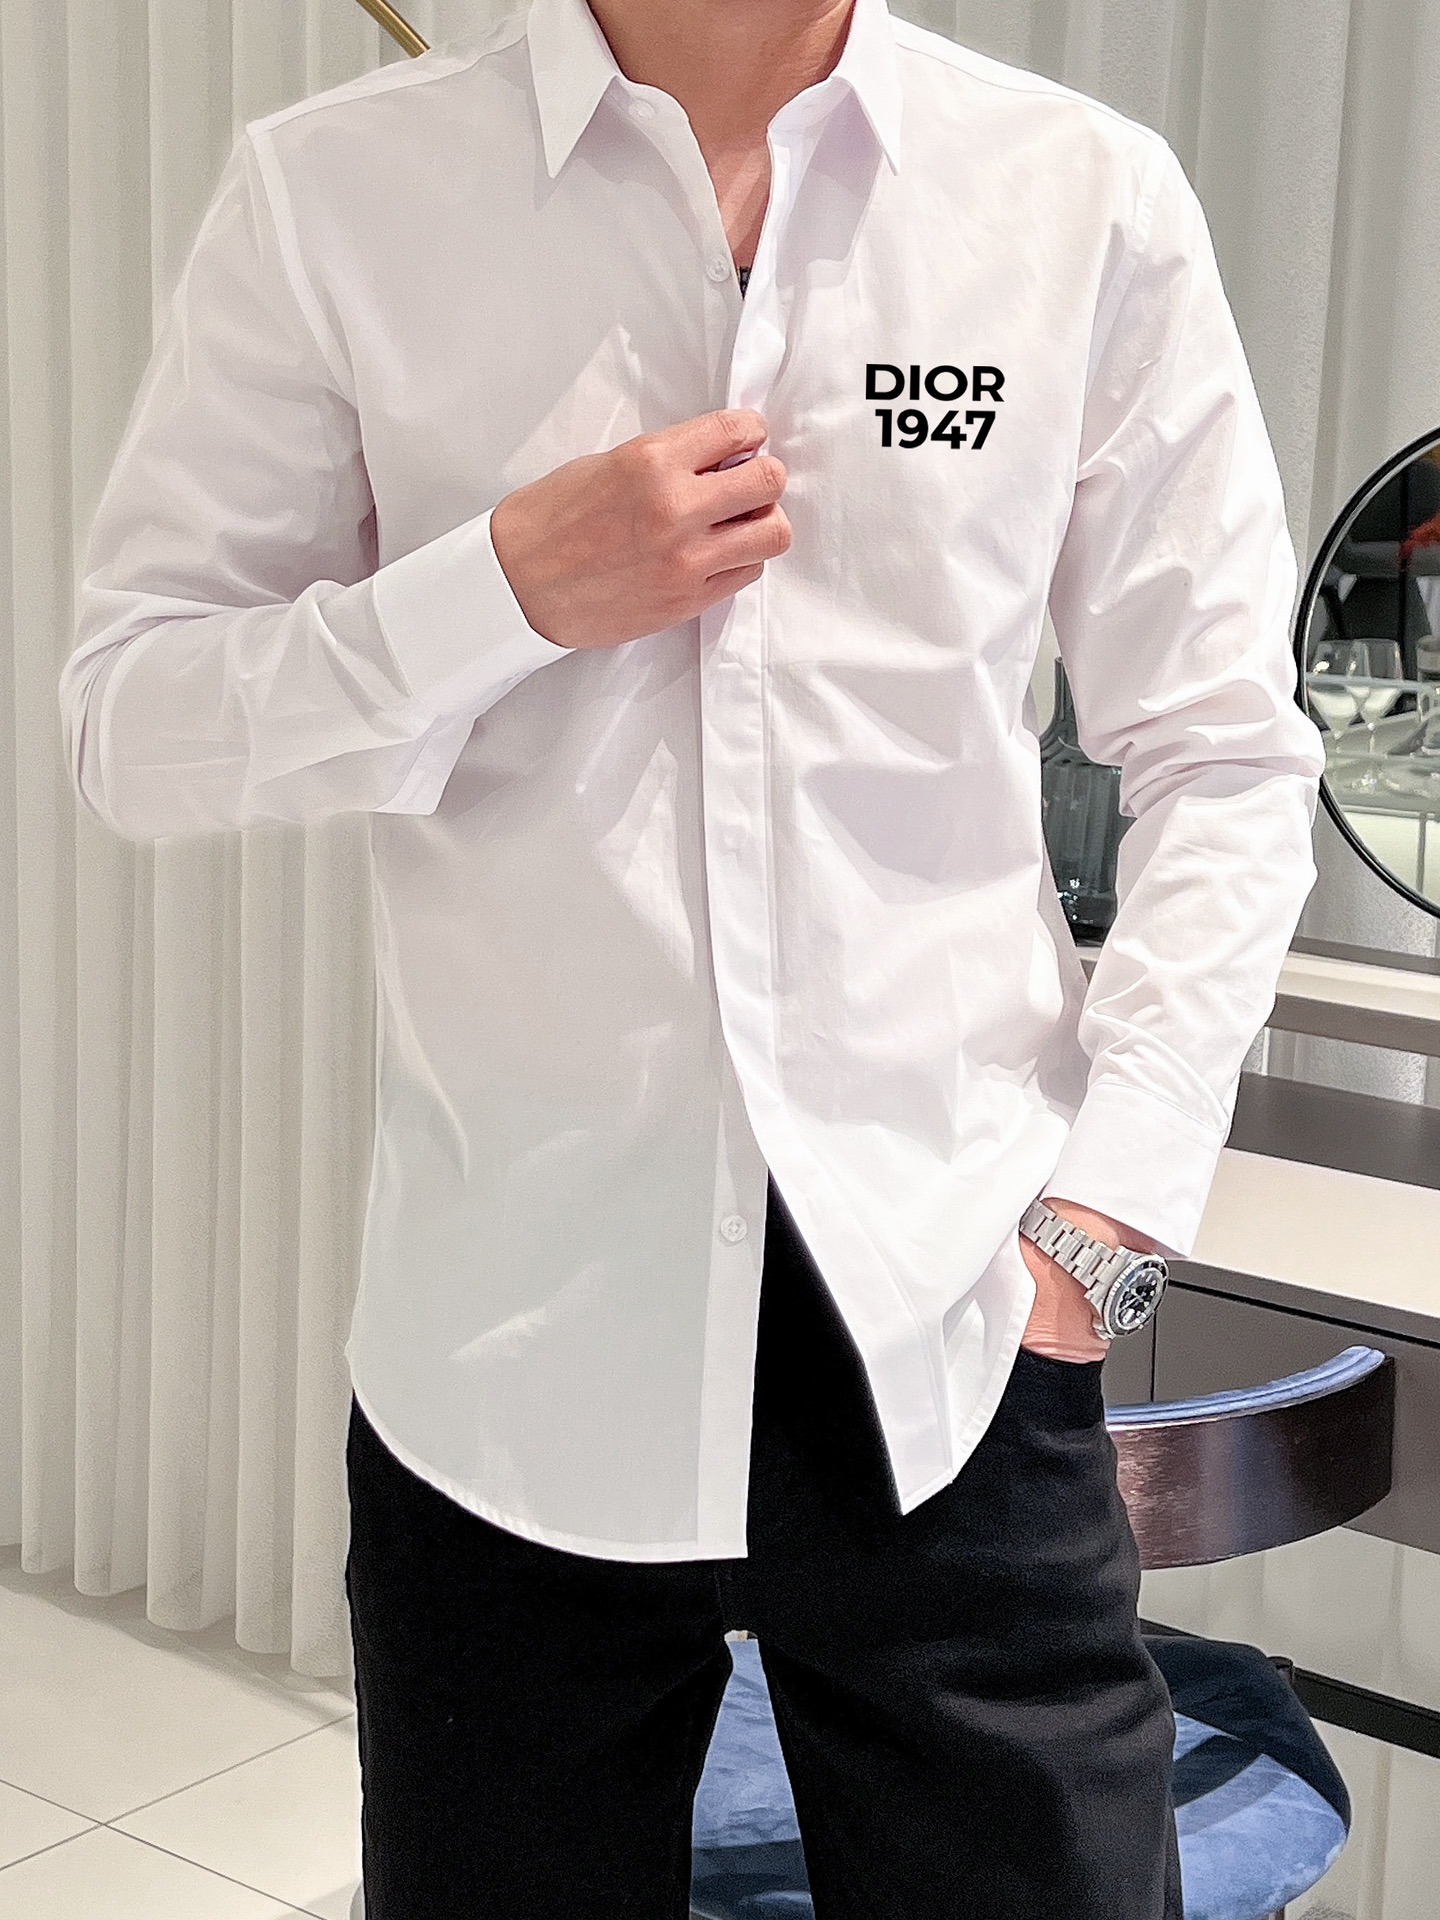 Dior专柜最新春款男士必备款衬衫100%天然棉舒服透气原单狠货原版面料柔软舒适上身高端又奢华足够场面的